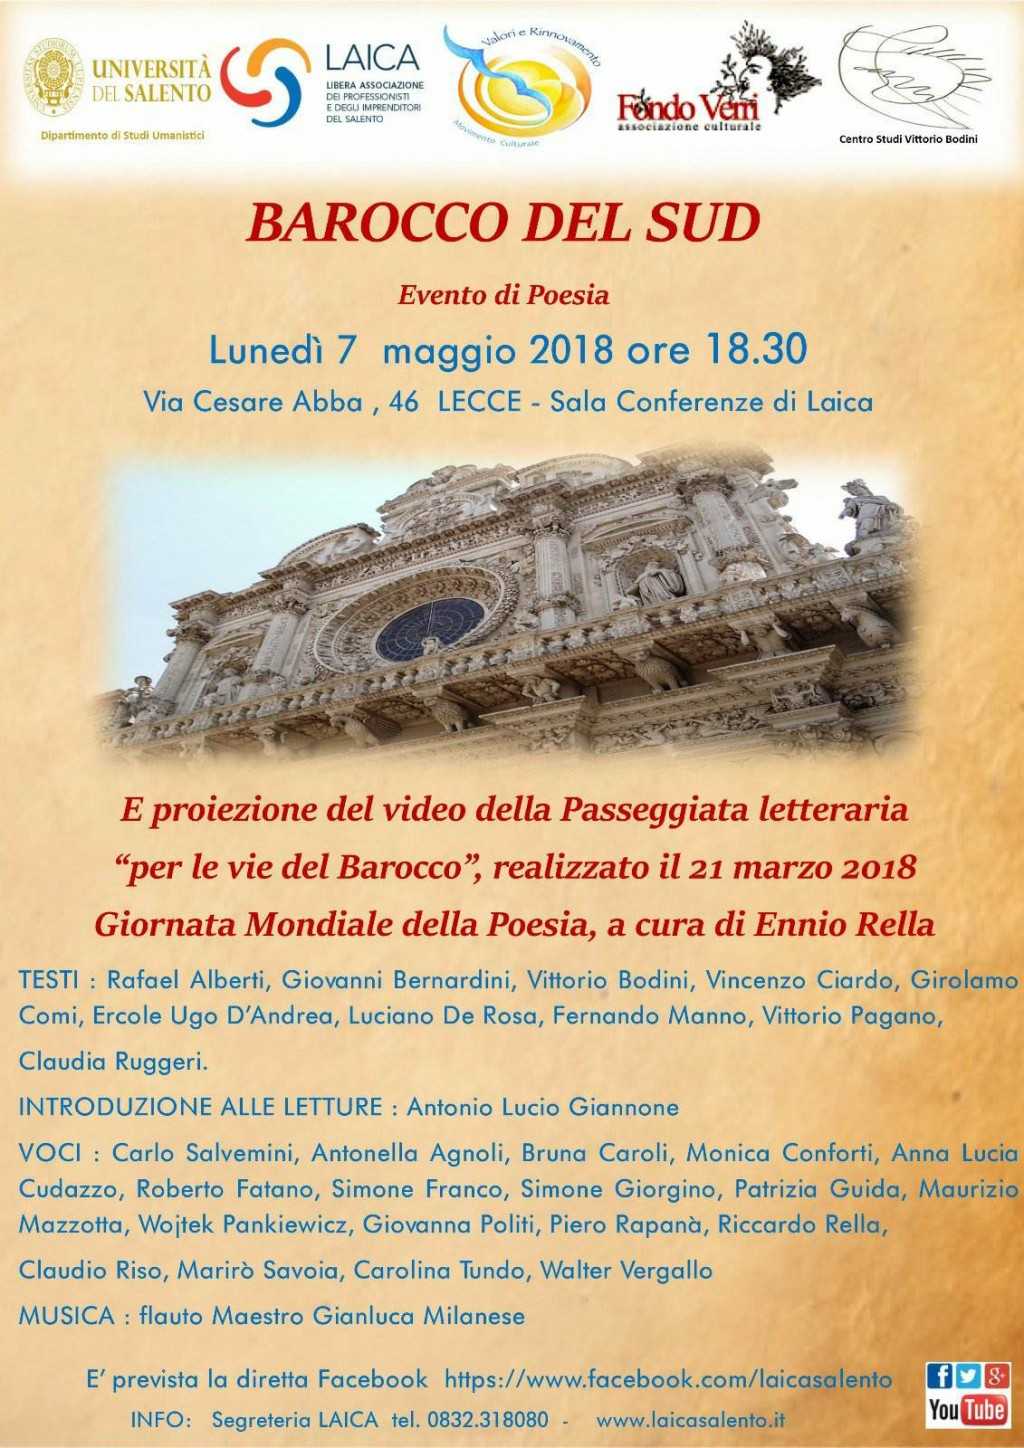 "Barocco del Sud", domani l'evento di poesia da Laica in collaborazione con Unisalento...